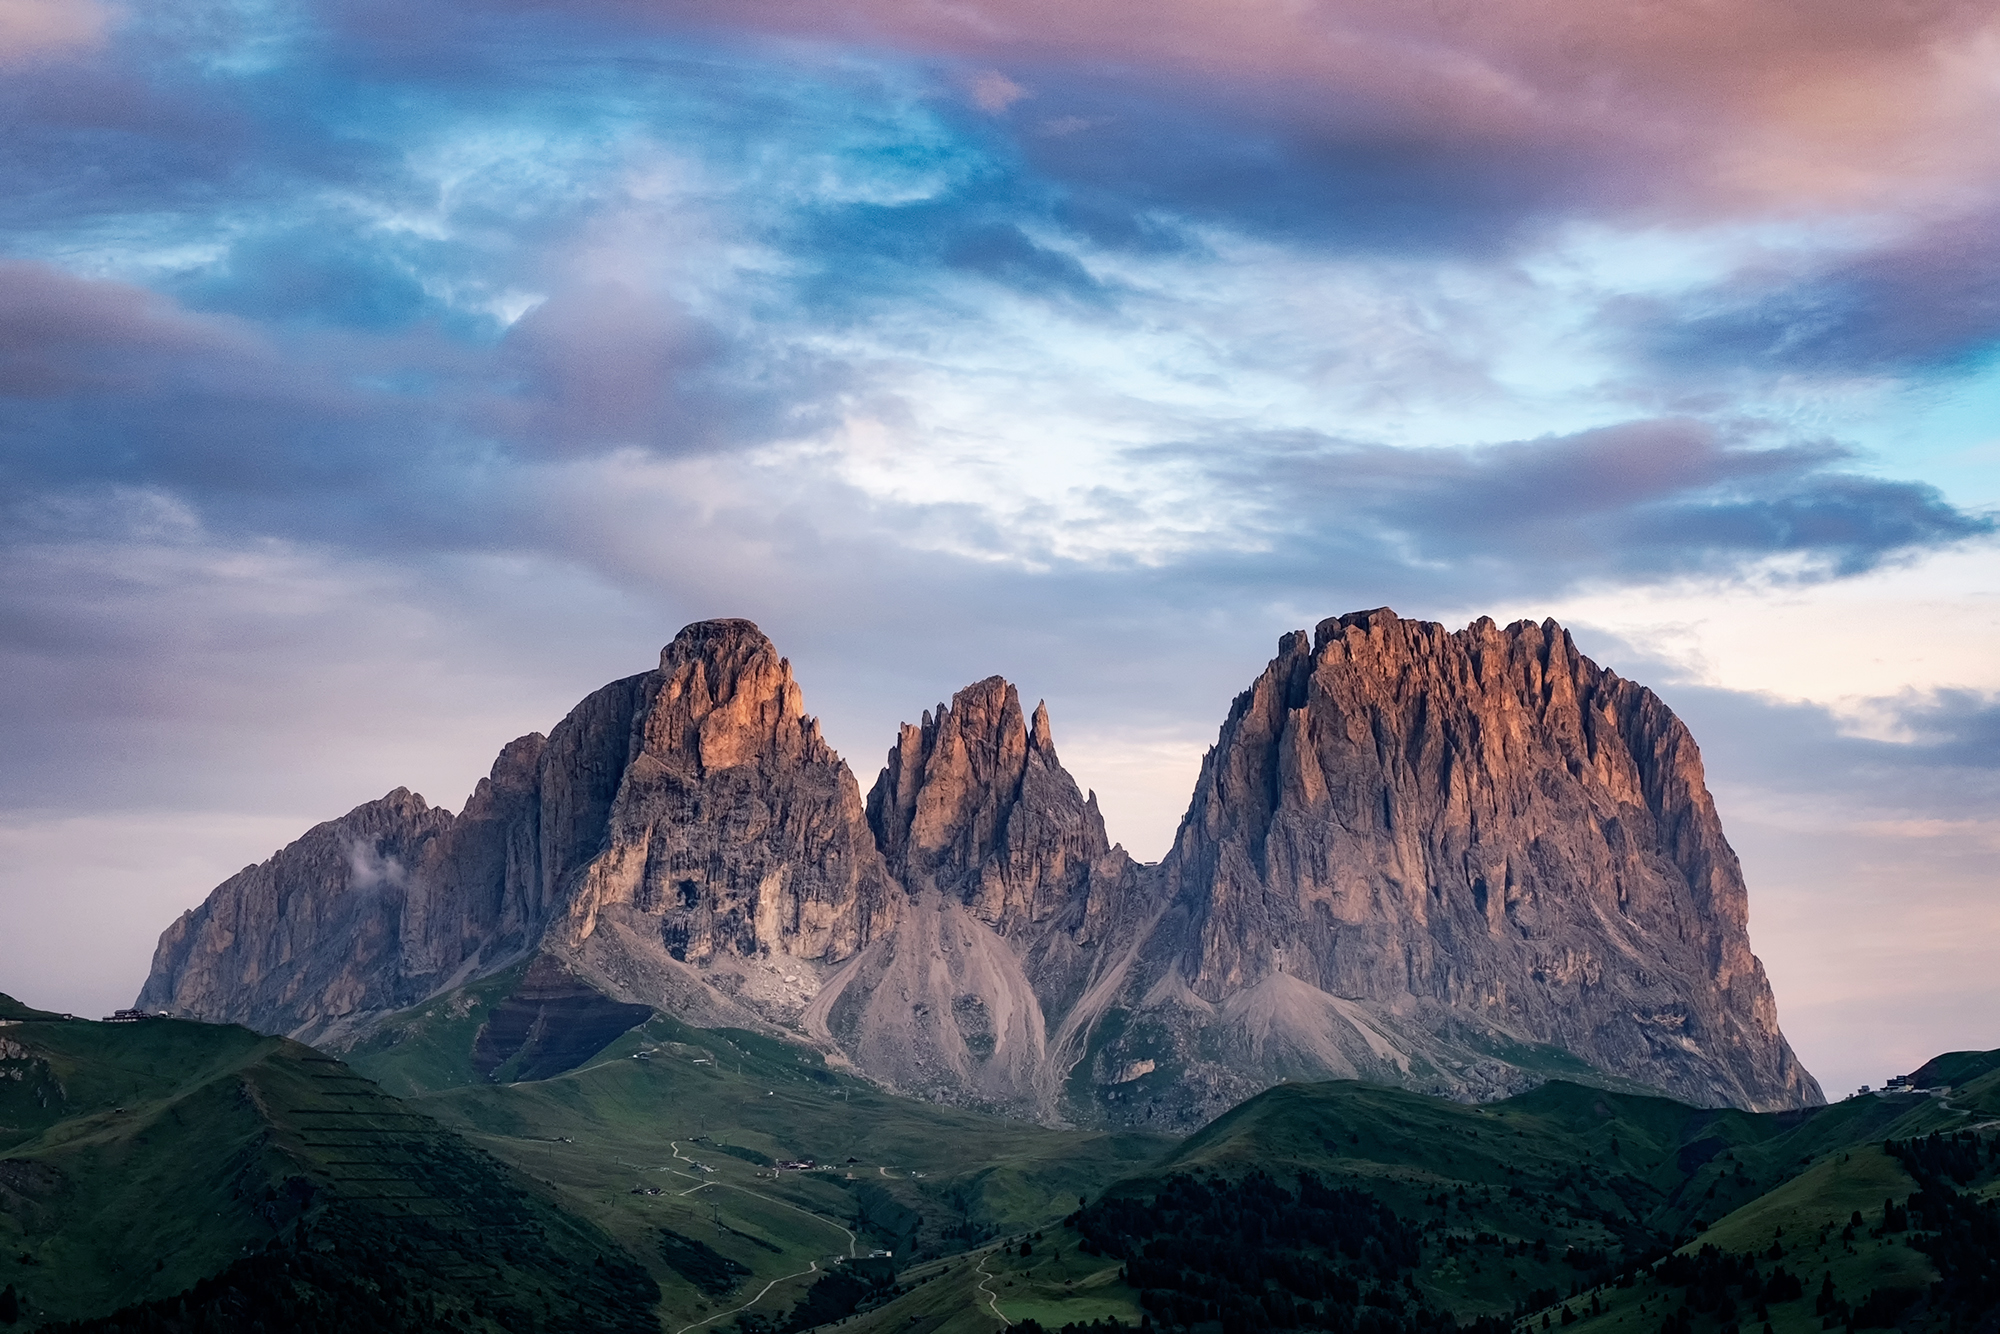 A mesmerizing view of Sassolungo mountain, Italy